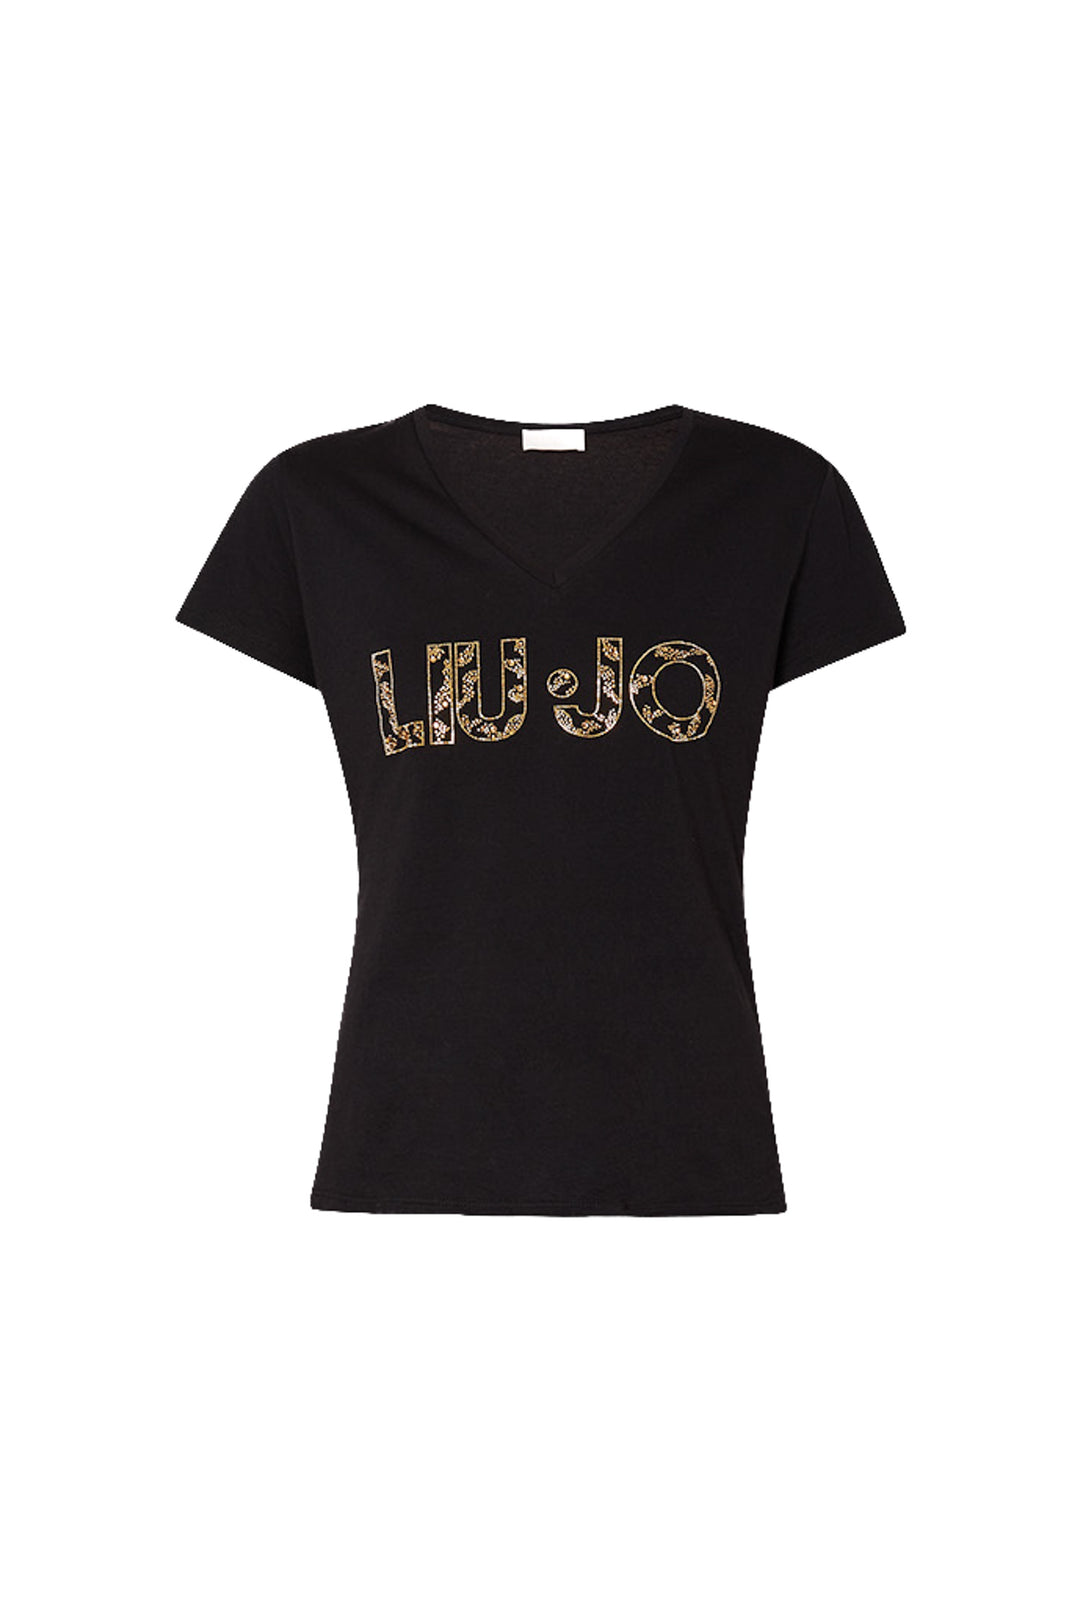 LIU JO T-shirt nera ecosostenibile in cotone con logo - Mancinelli 1954